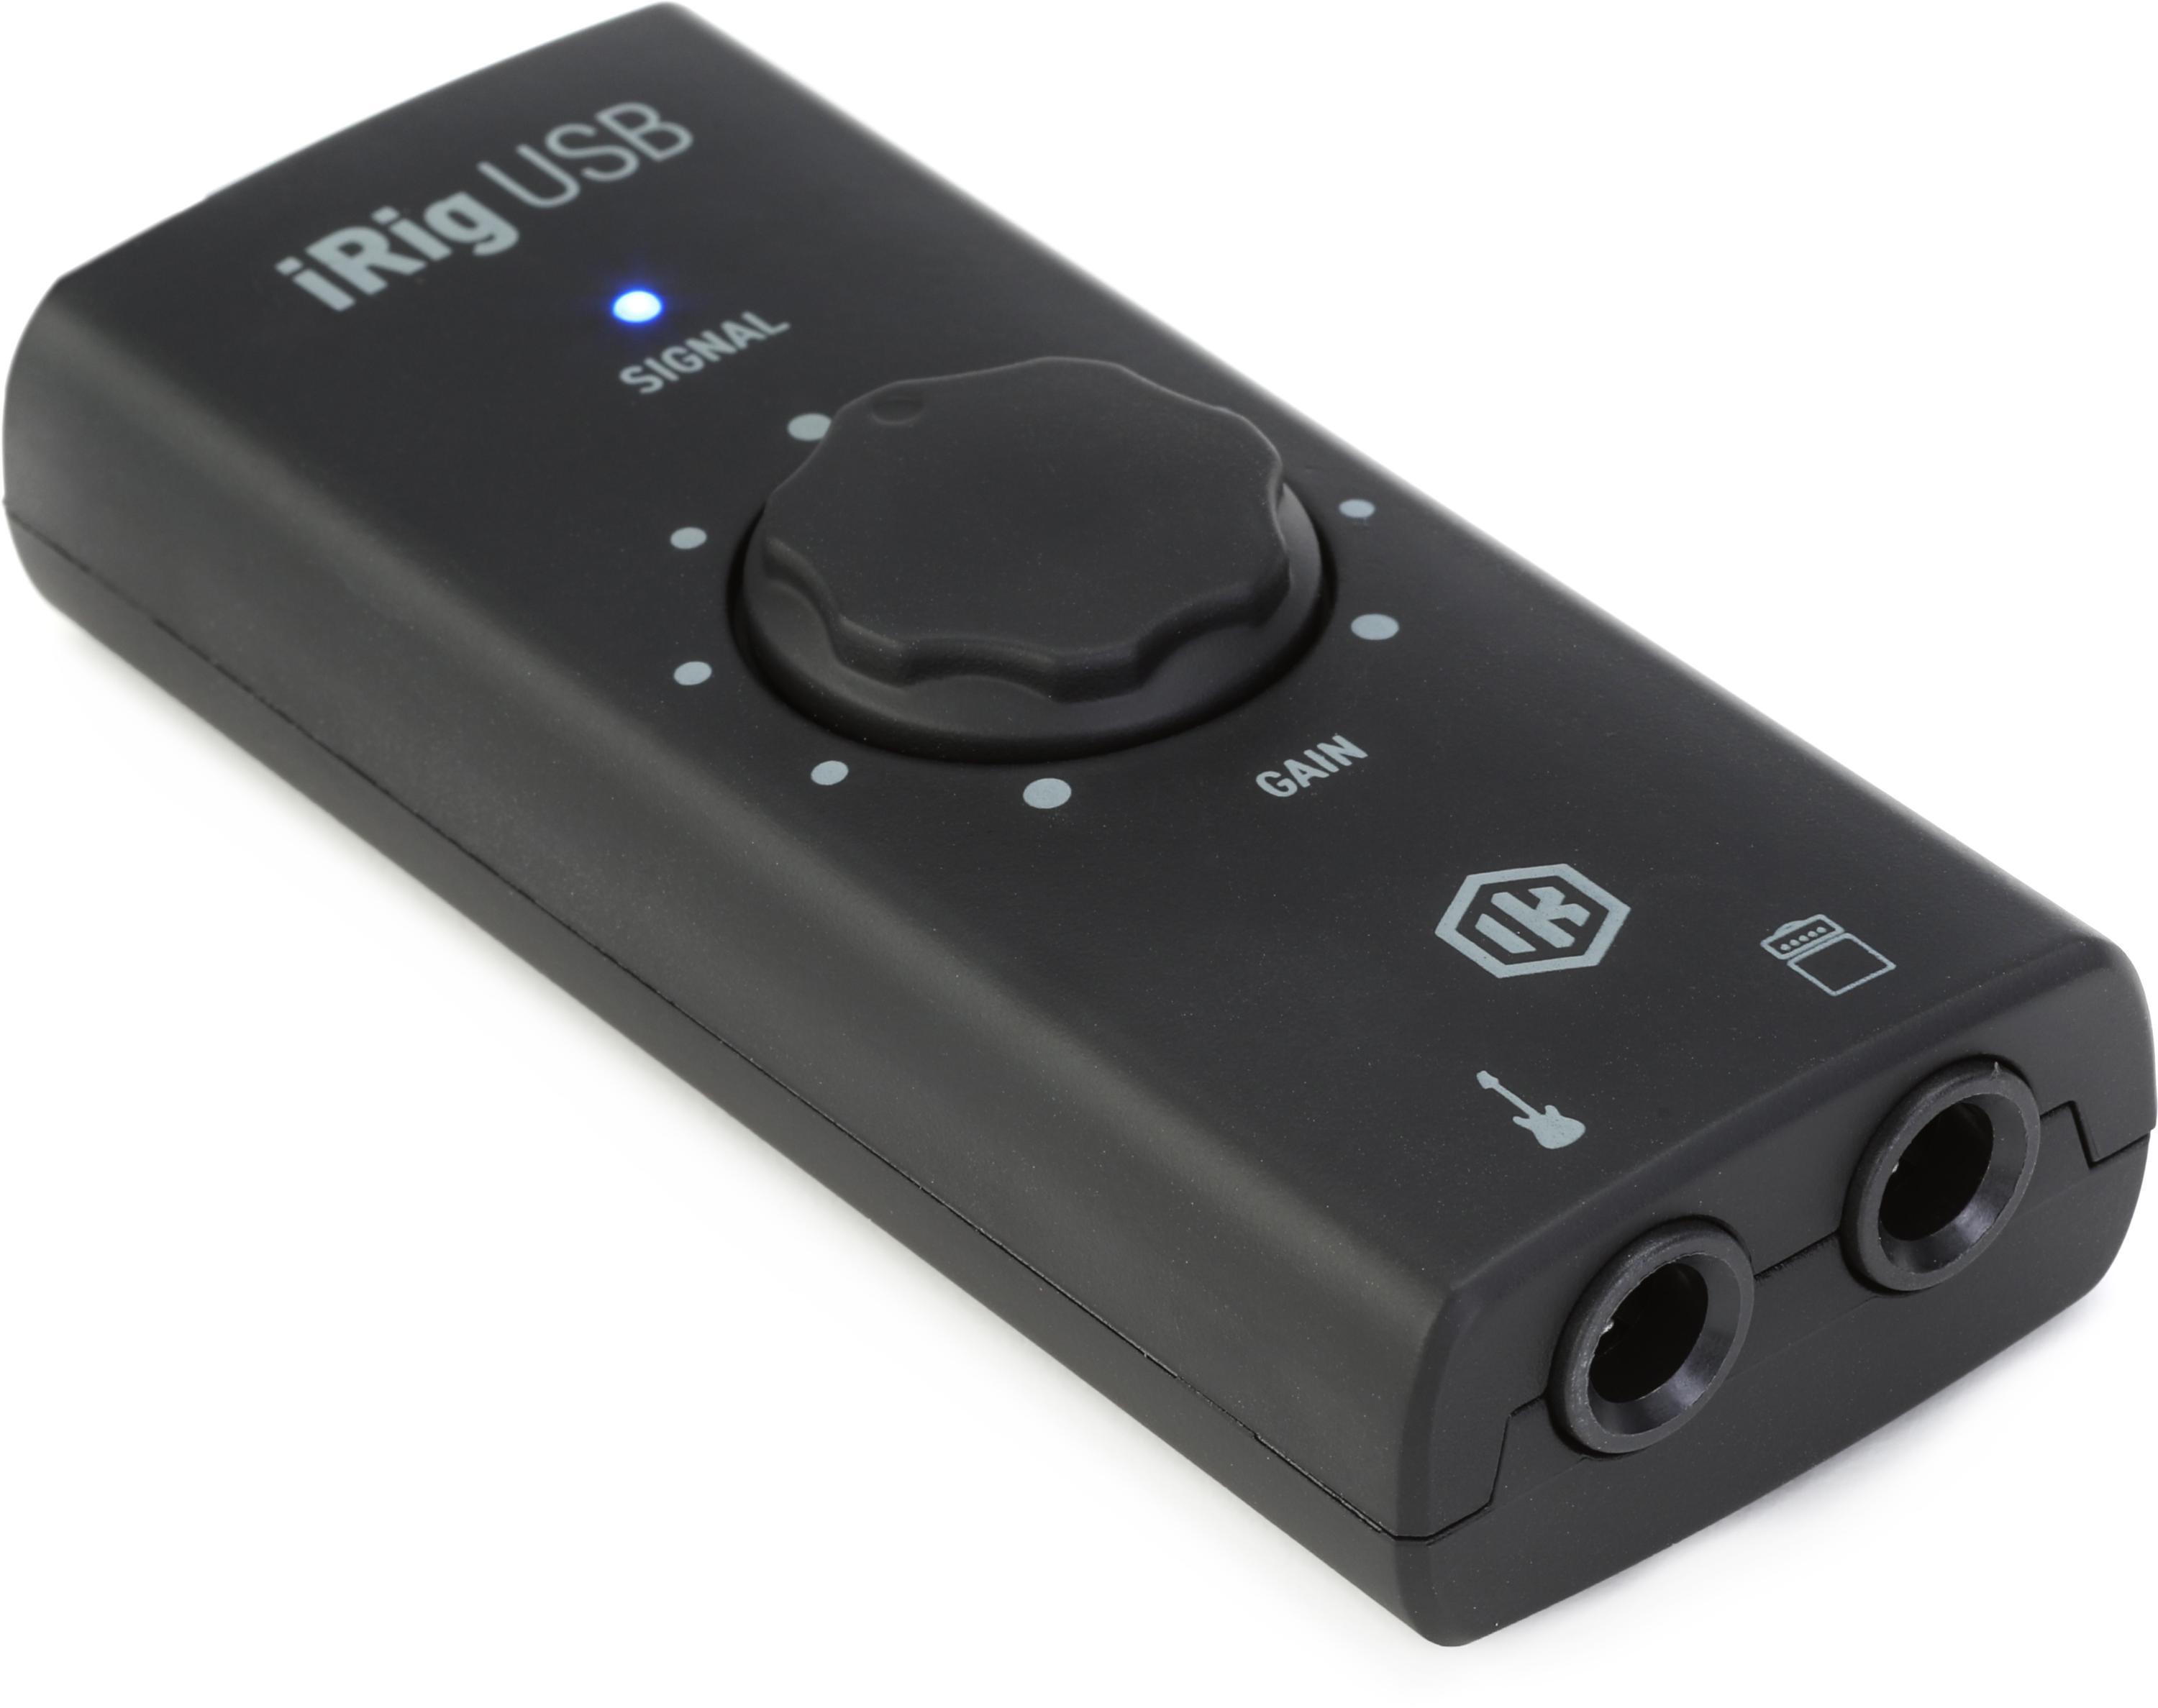 Used IK Multimedia iRig Stream USB Audio Interface